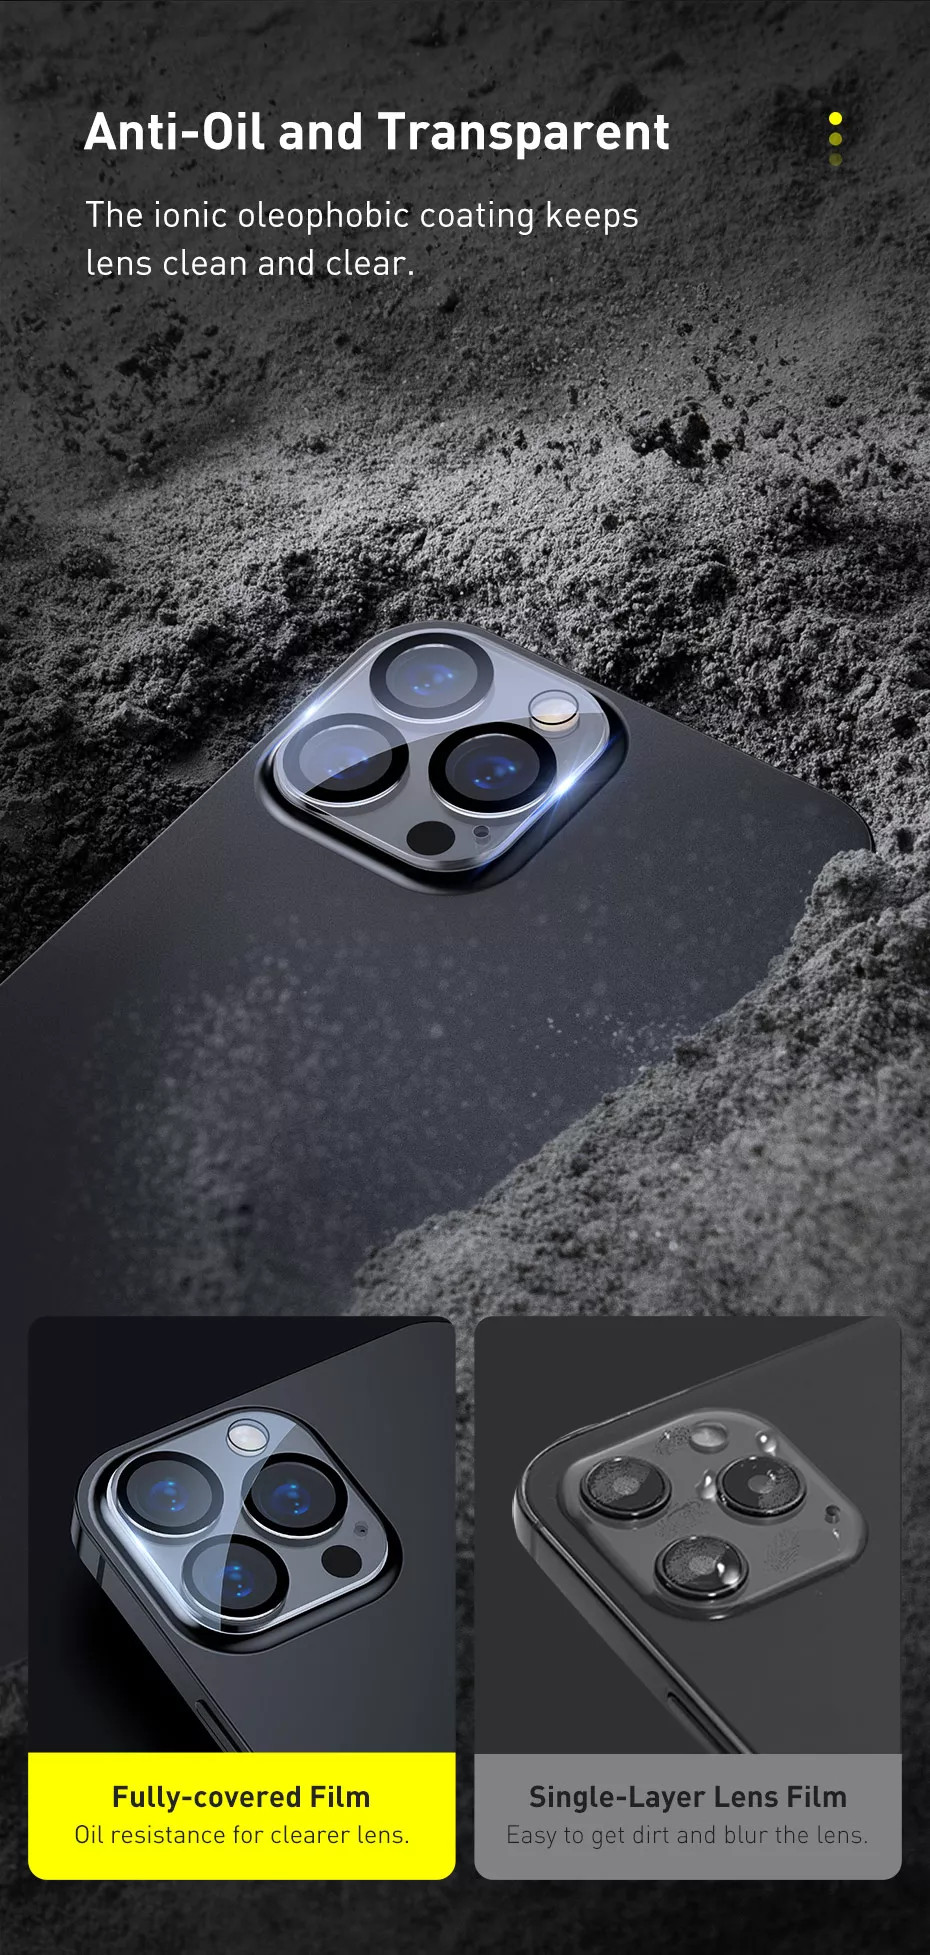 Miếng dán kính cường lực Full bảo vệ Camera cho iPhone 12 Pro / 12 Pro Max hiệu Baseus Full-Frame Lens Film mang lại khả năng quay video 8K